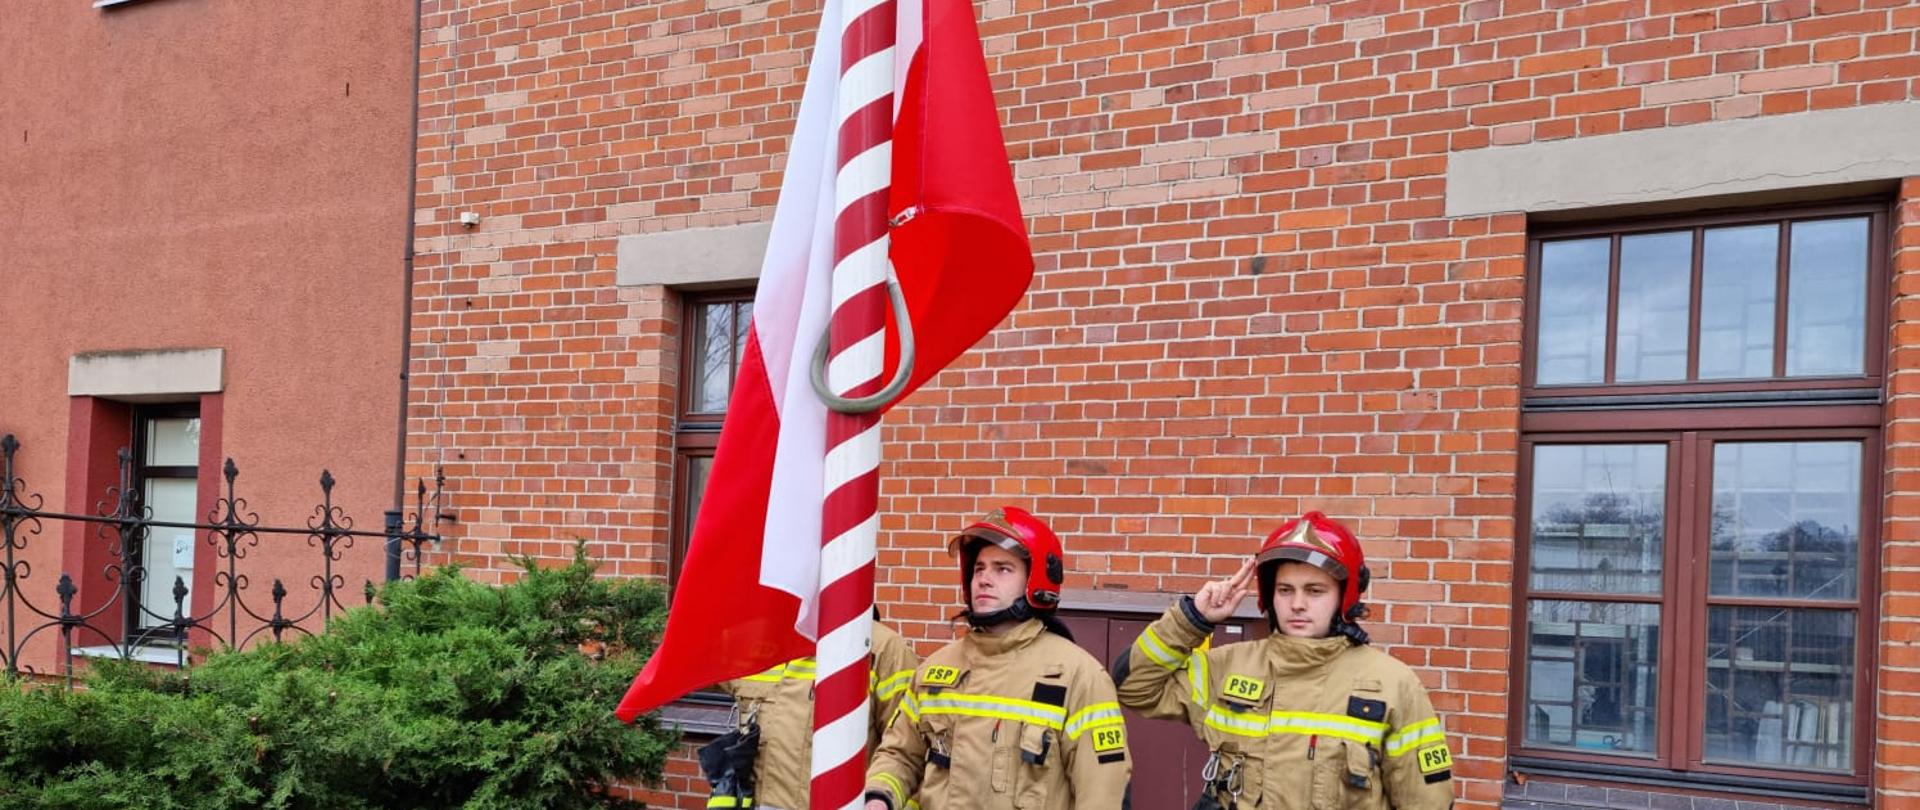 Strażacy w jasnych mundurach i czerwonych hełmach na tle budynku z czerwonej cegły wciągają na masz biało-czerwoną flagę